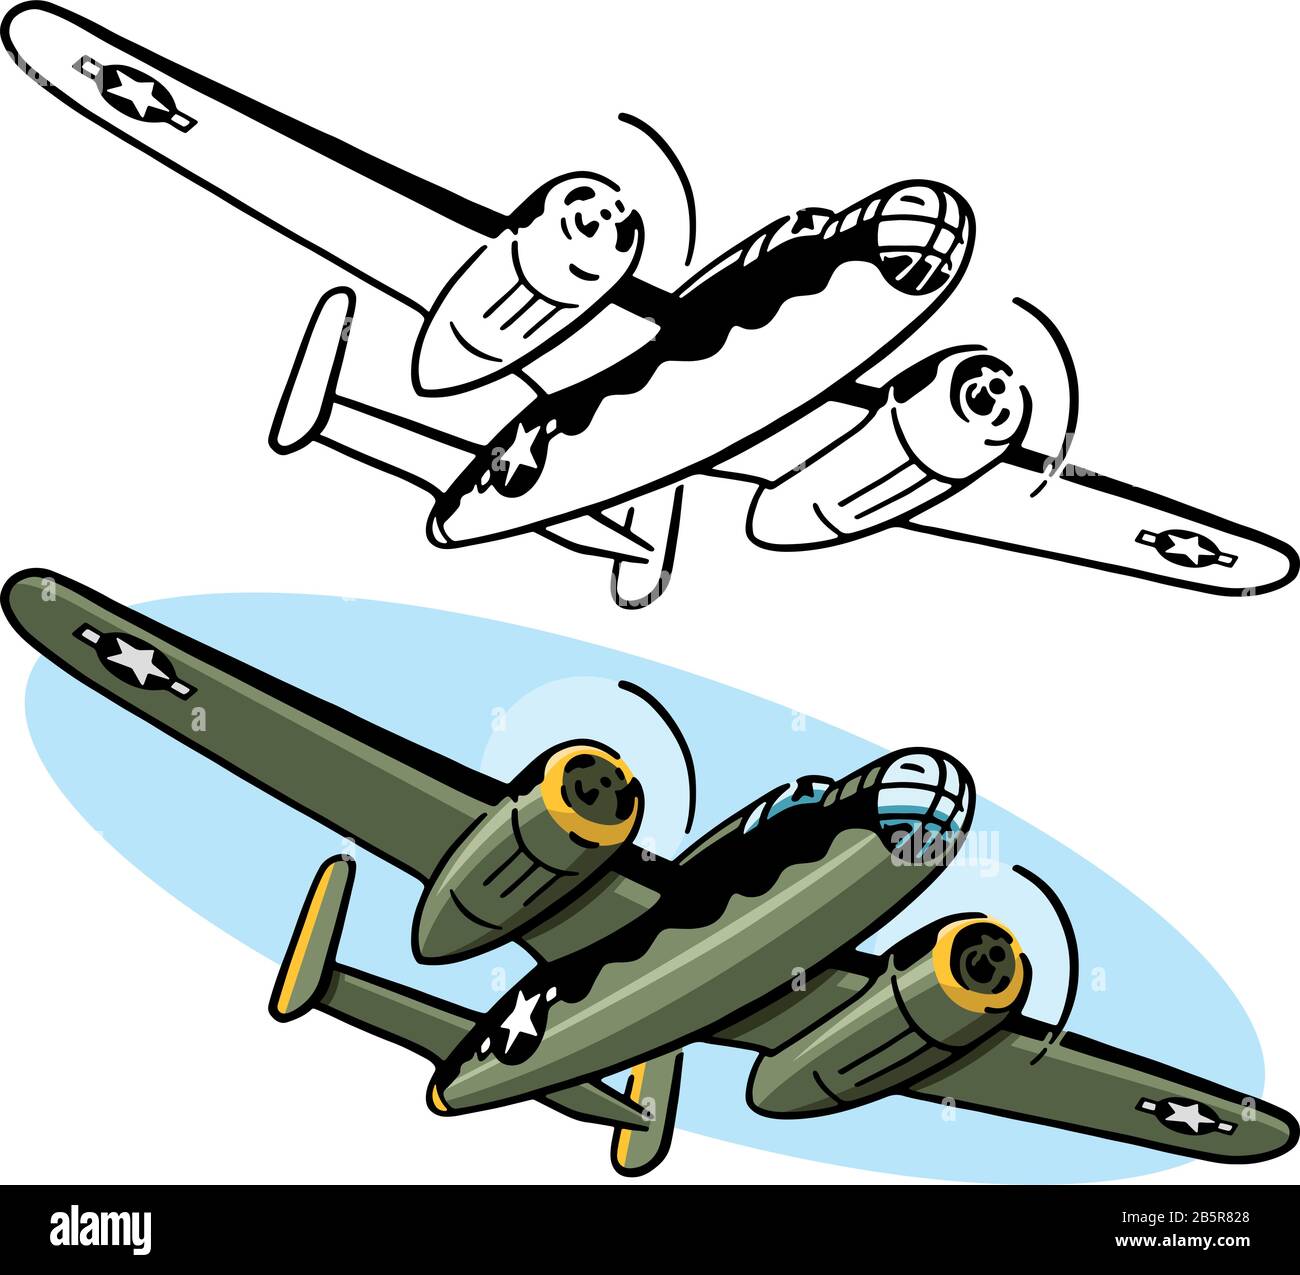 Dibujo de un avión bombardero B-25 de la Segunda Guerra Mundial estadounidense. Ilustración del Vector